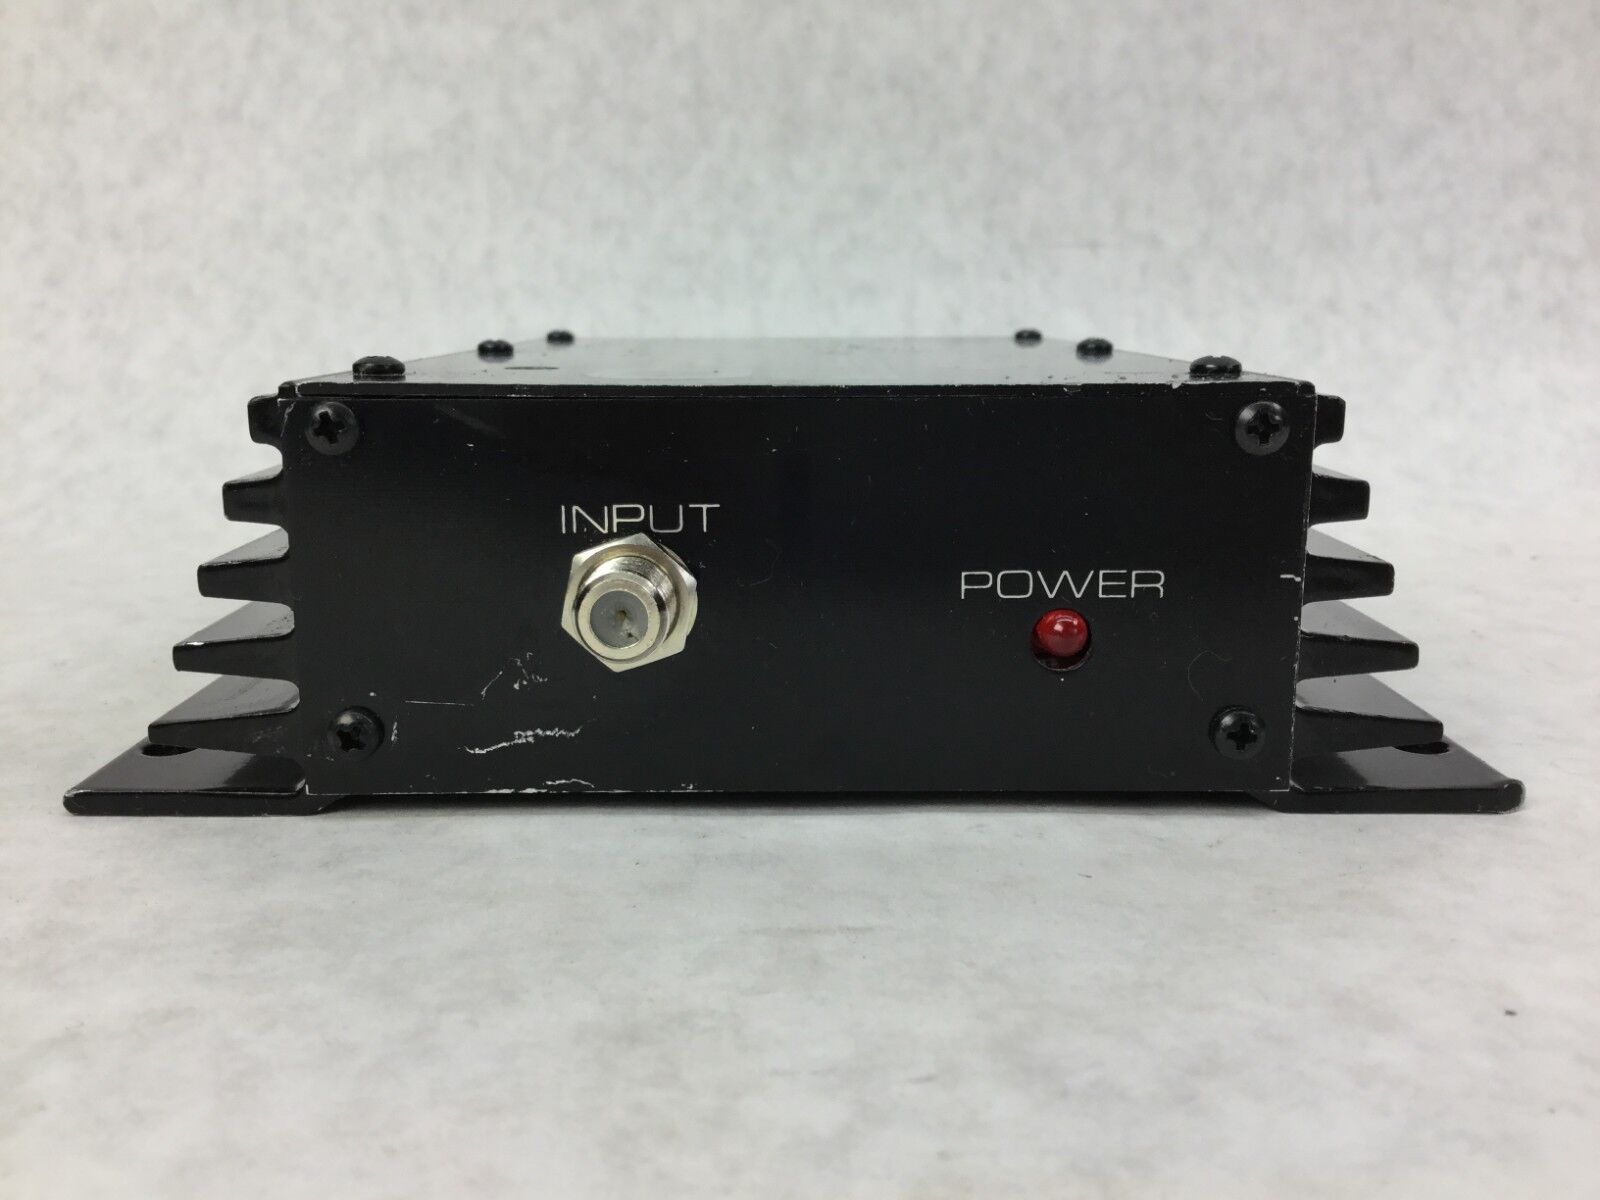 Channel Plus RF Amplifier  Broadband/ CATV Amplifier  DA-1000  Untested